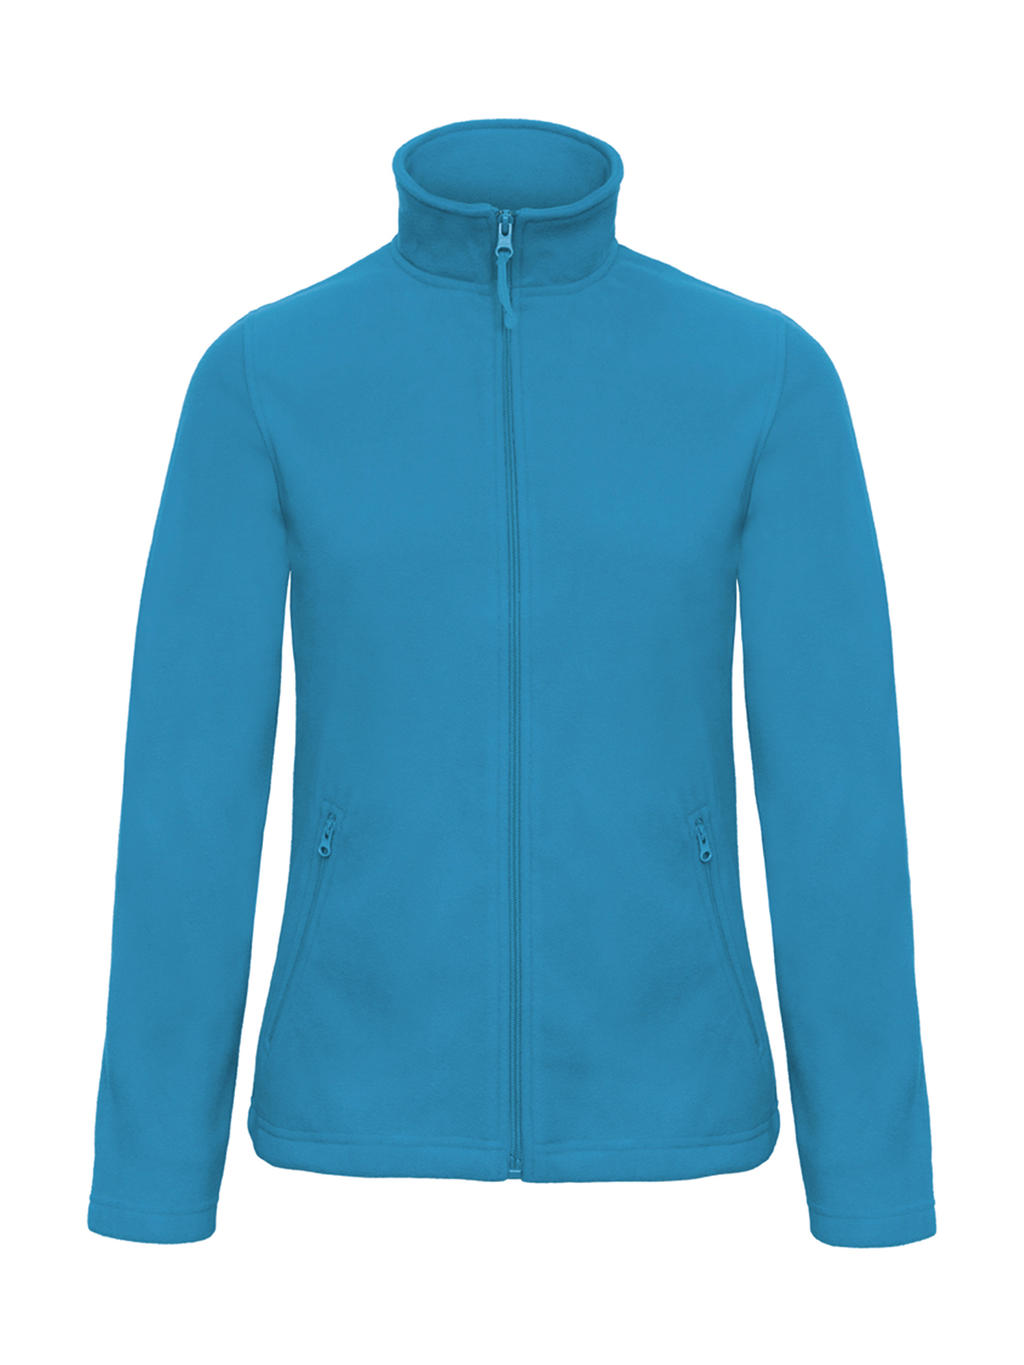  ID.501/women Micro Fleece Full Zip in Farbe Atoll